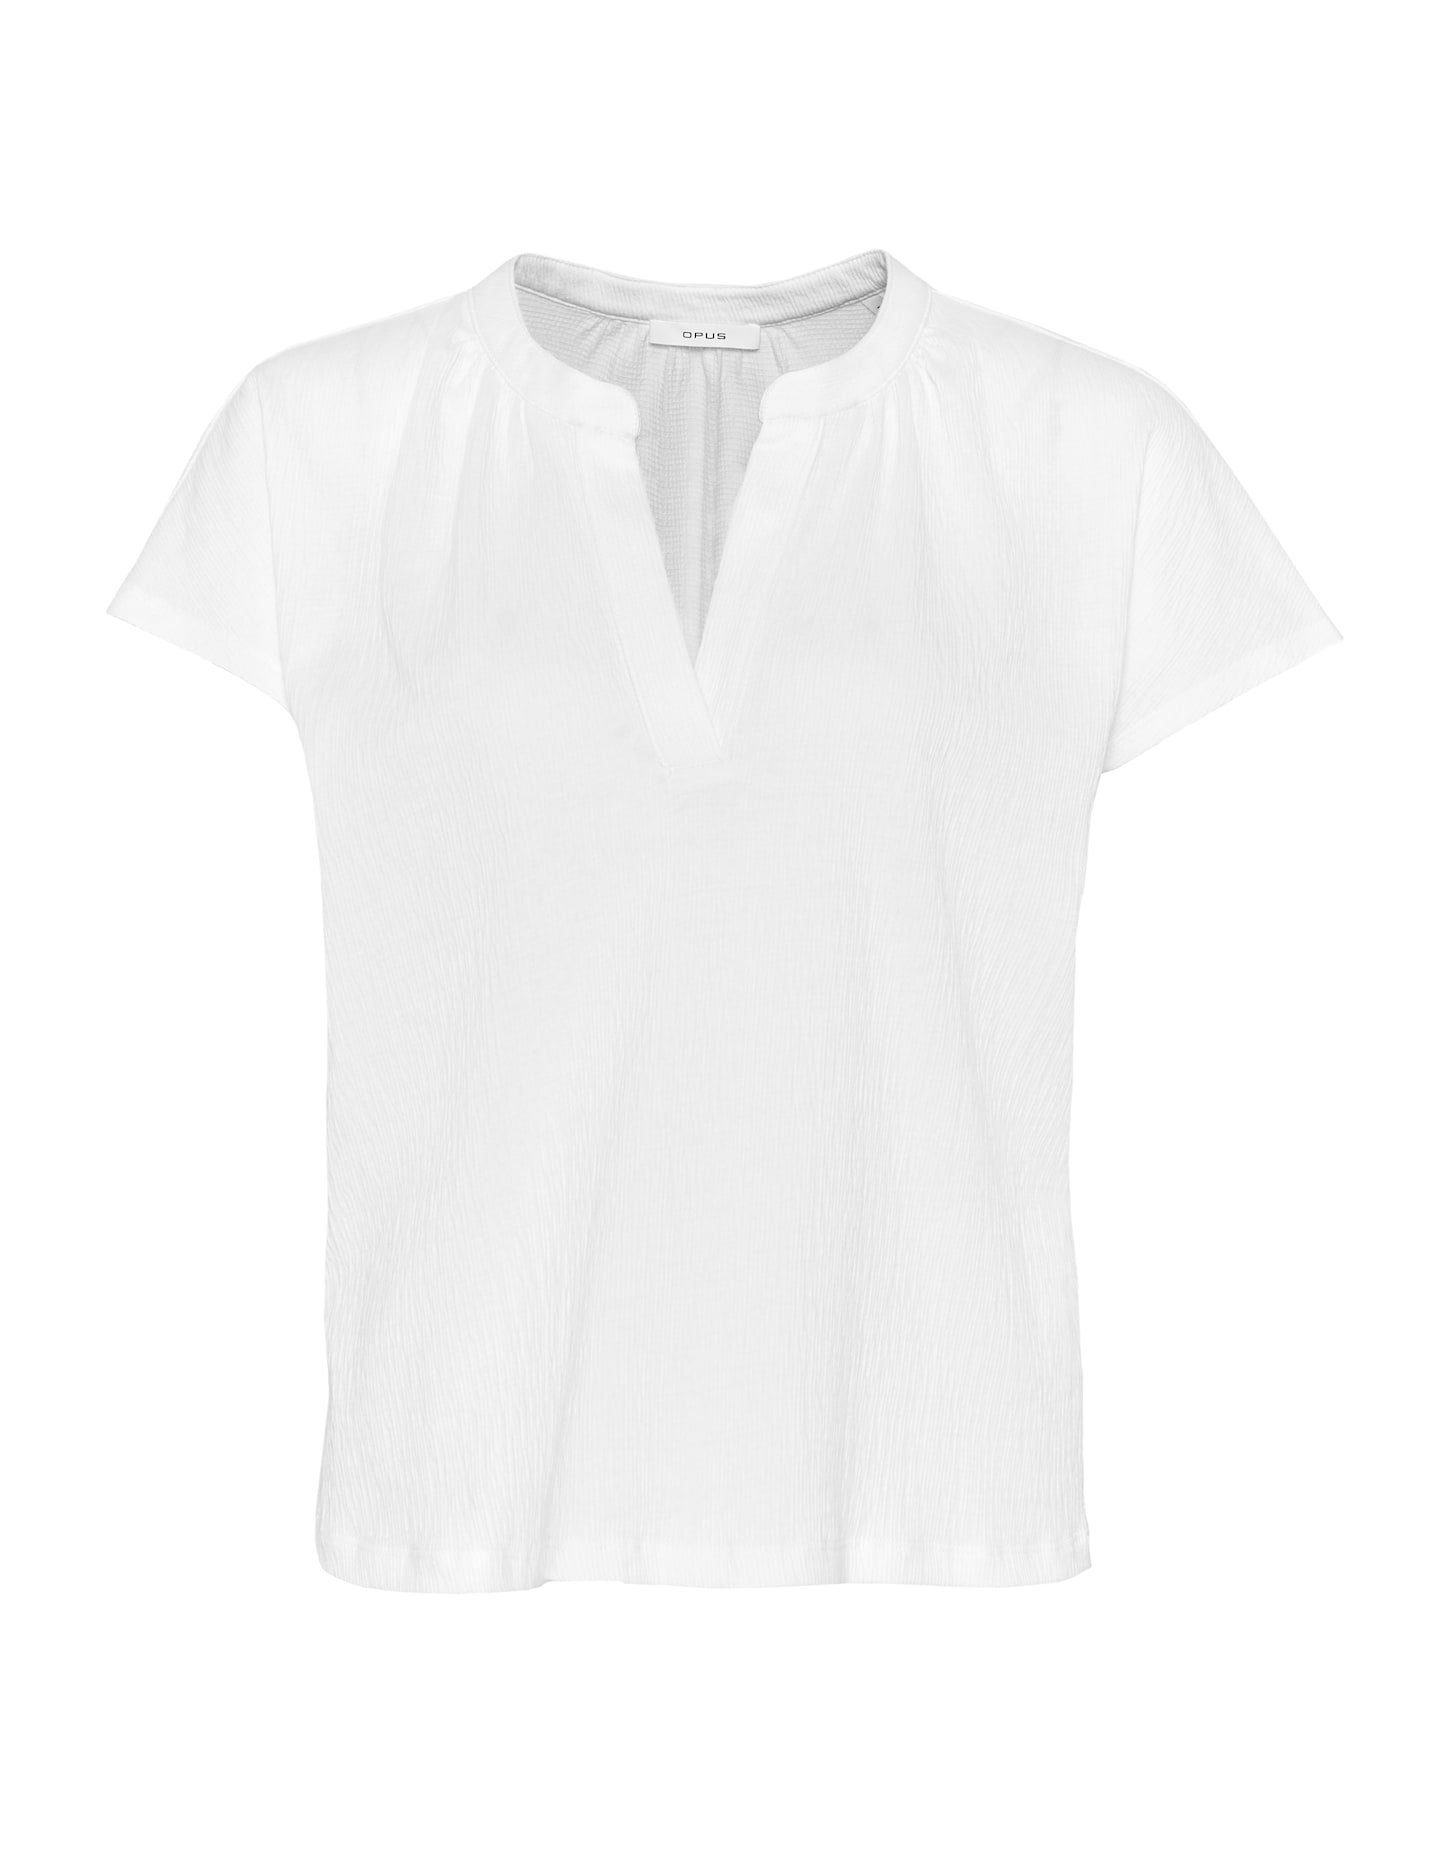 Weiße OPUS Shirts für Damen online kaufen | OTTO